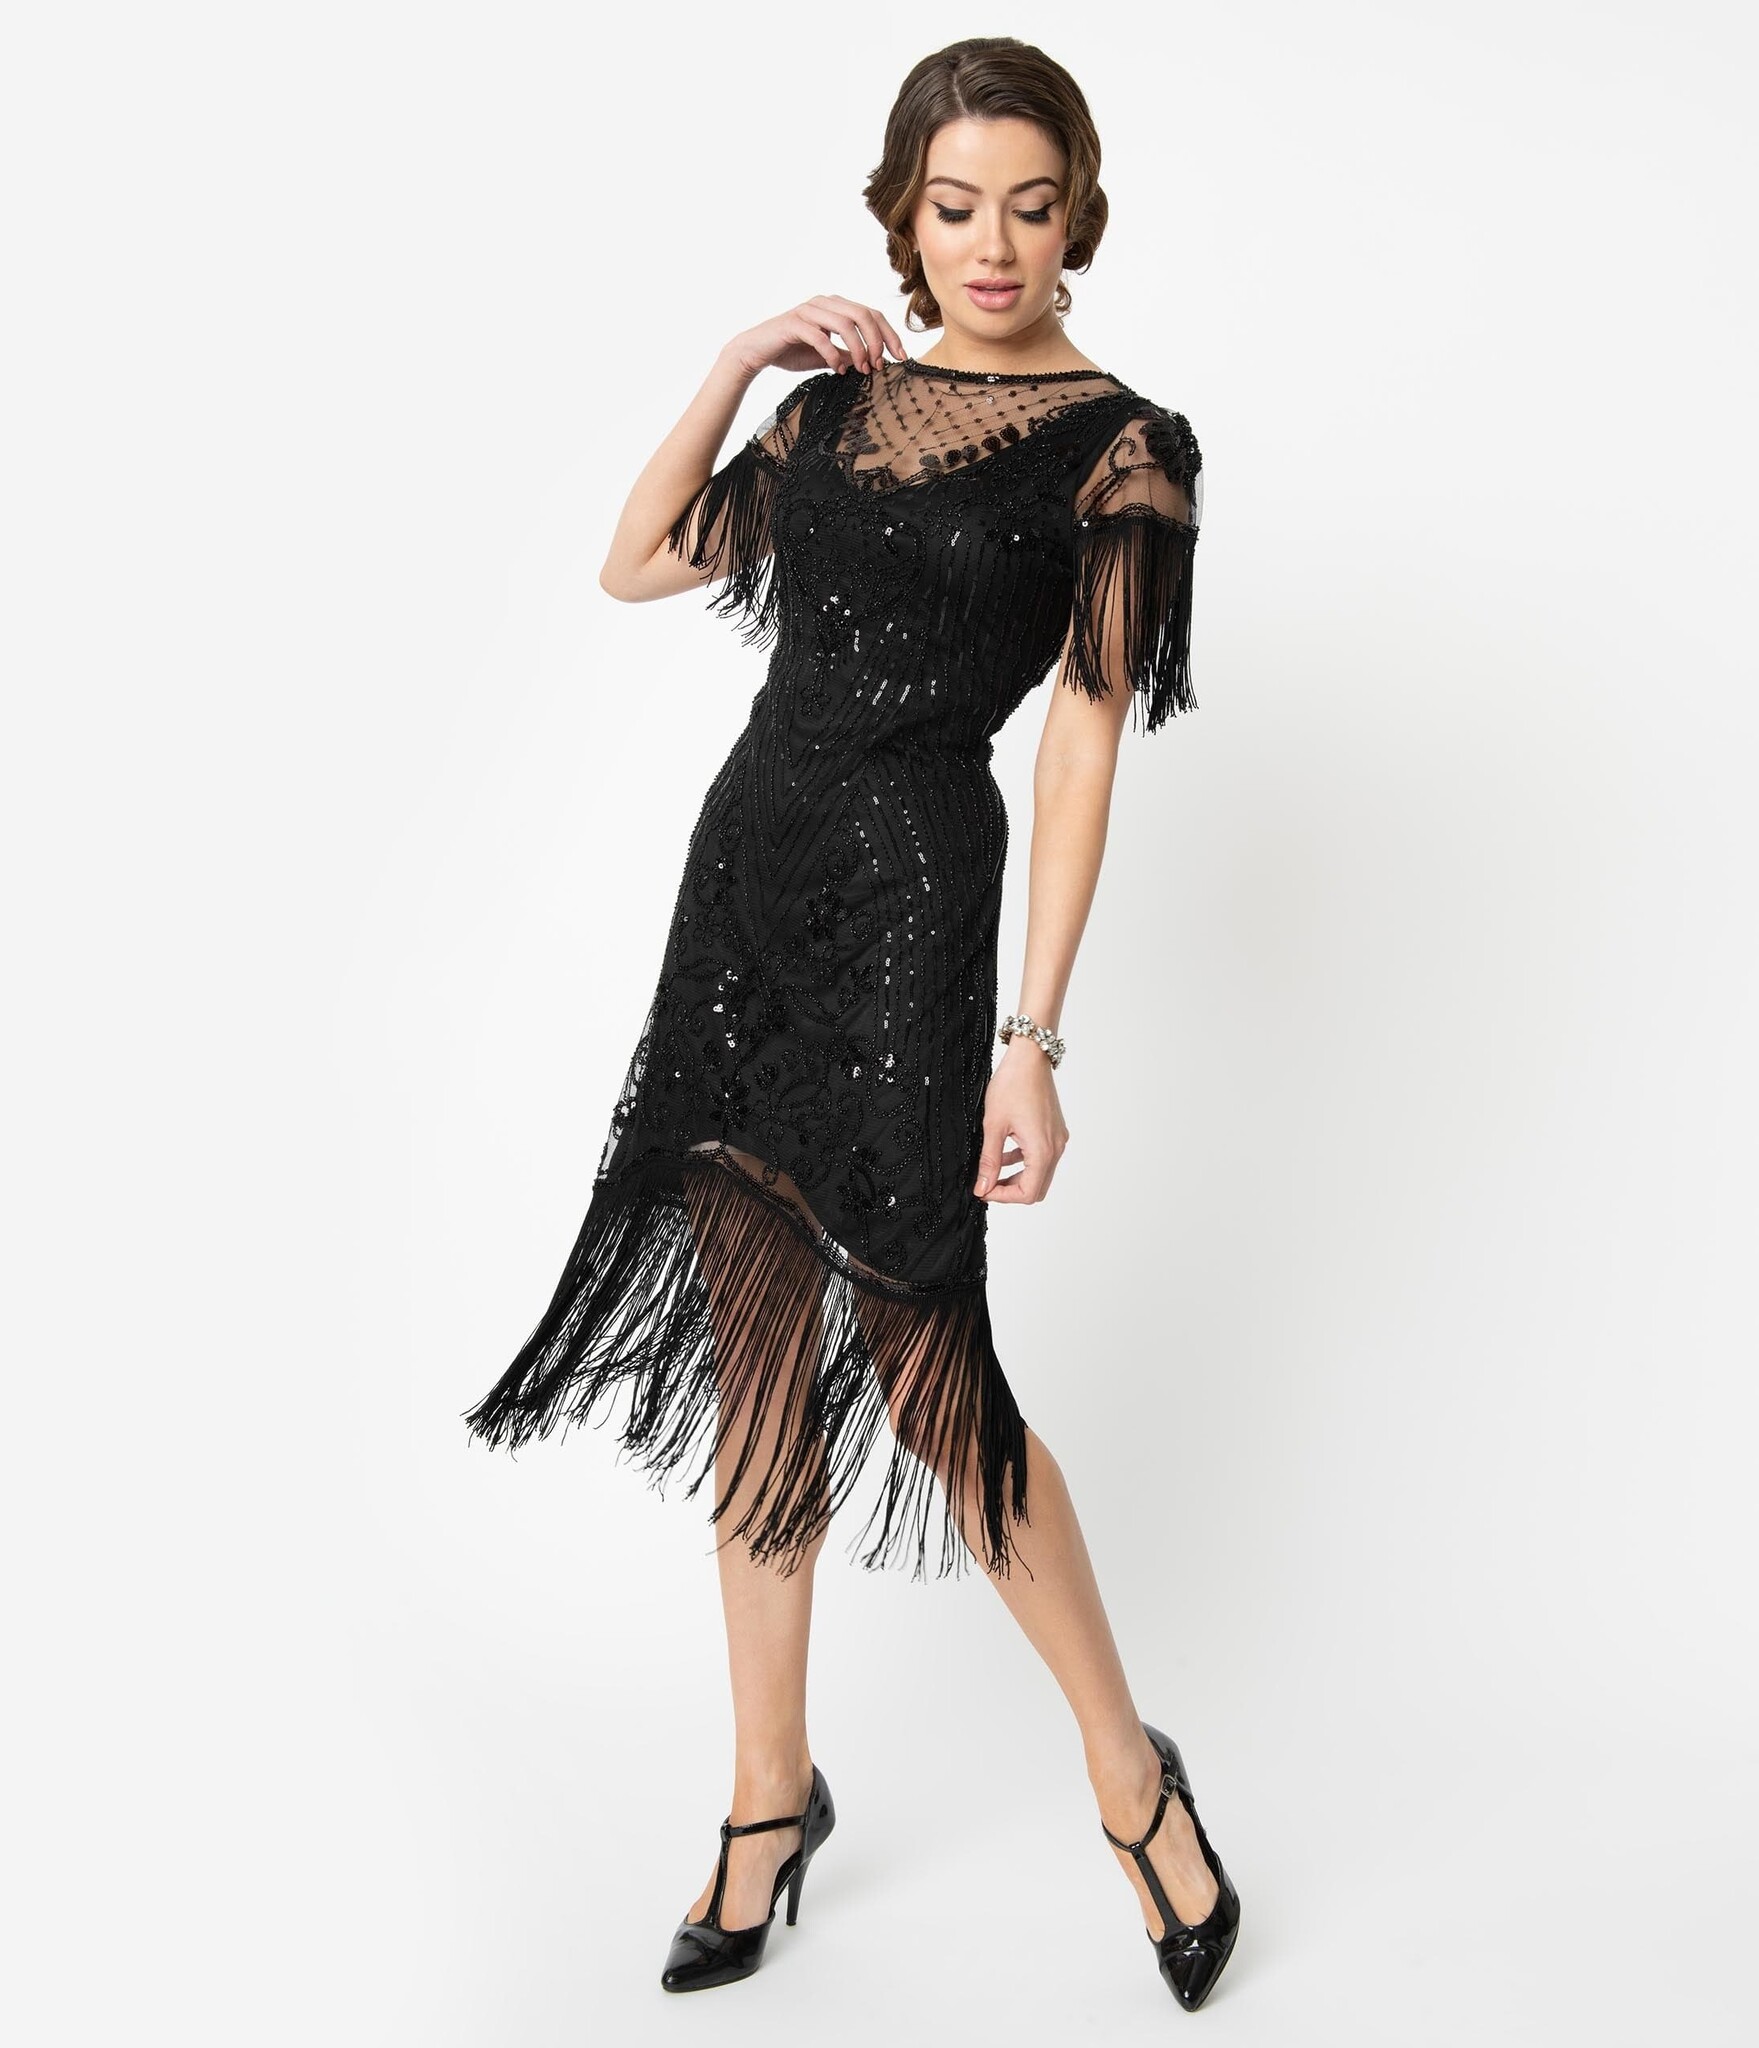 150 Wiggle Dresses ideas  wiggle dress, vintage outfits, vintage fashion